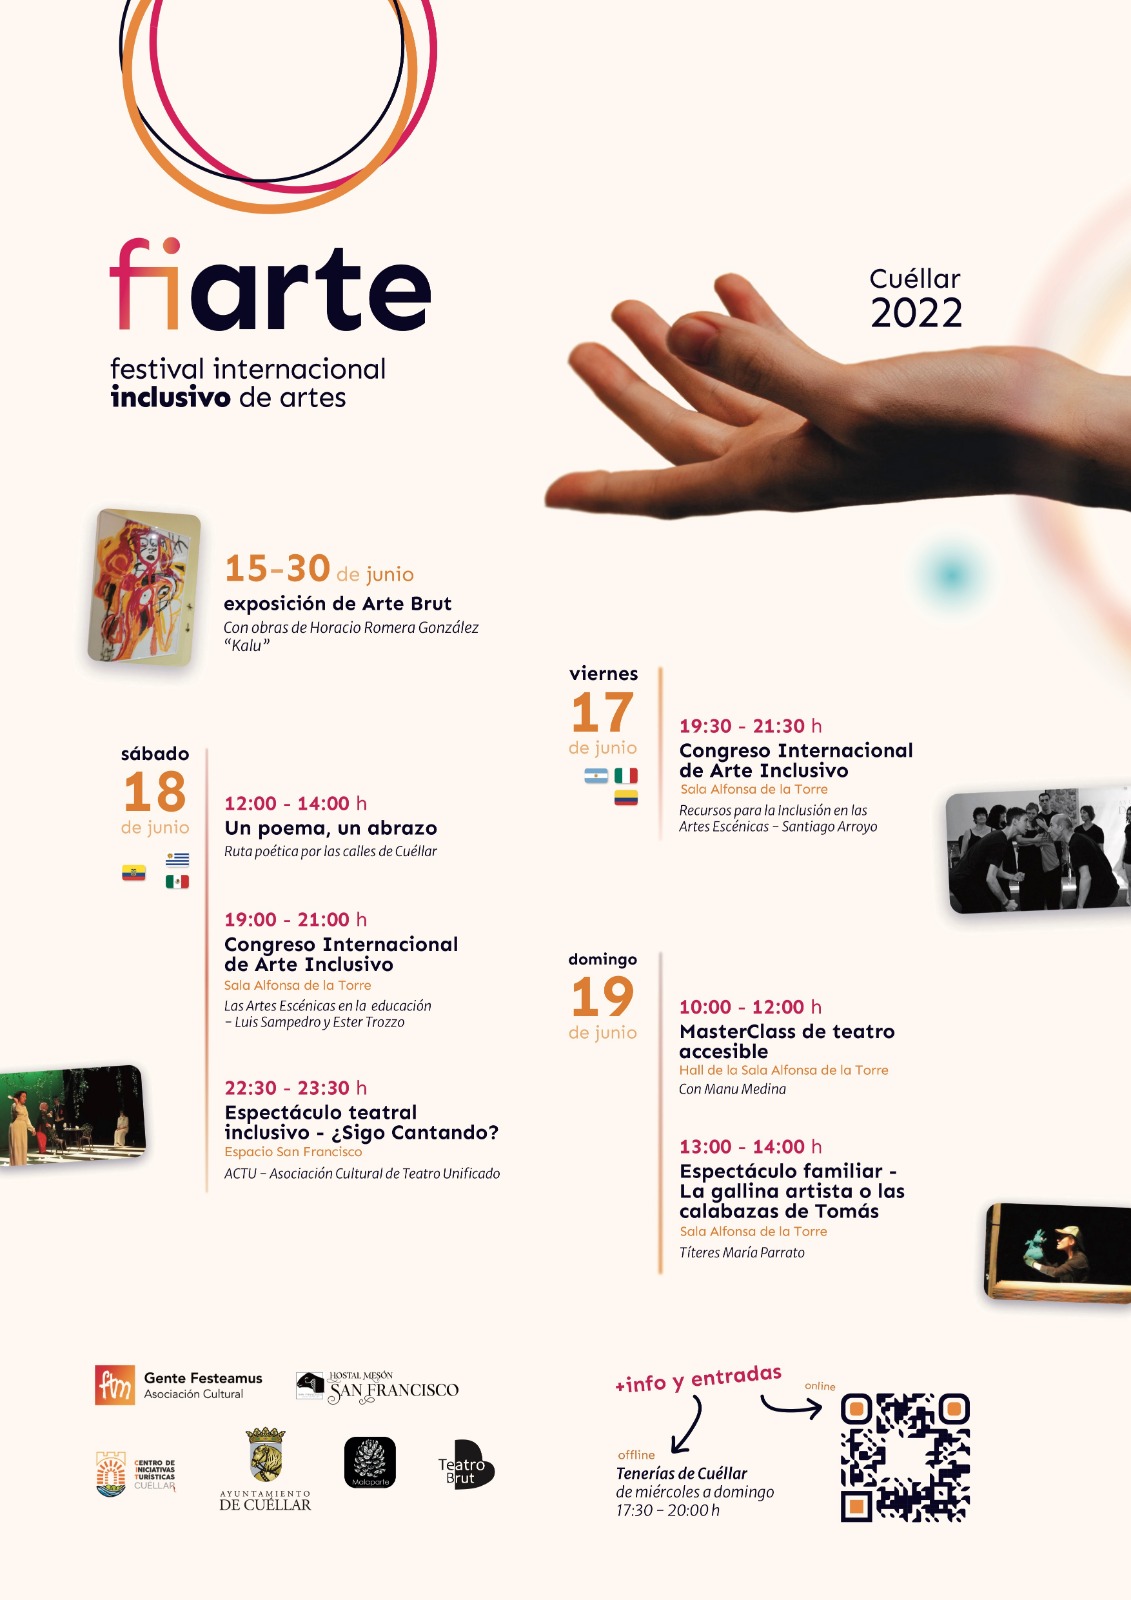 fiarte_festival_internacional_inclusivo_de_artes.jpg